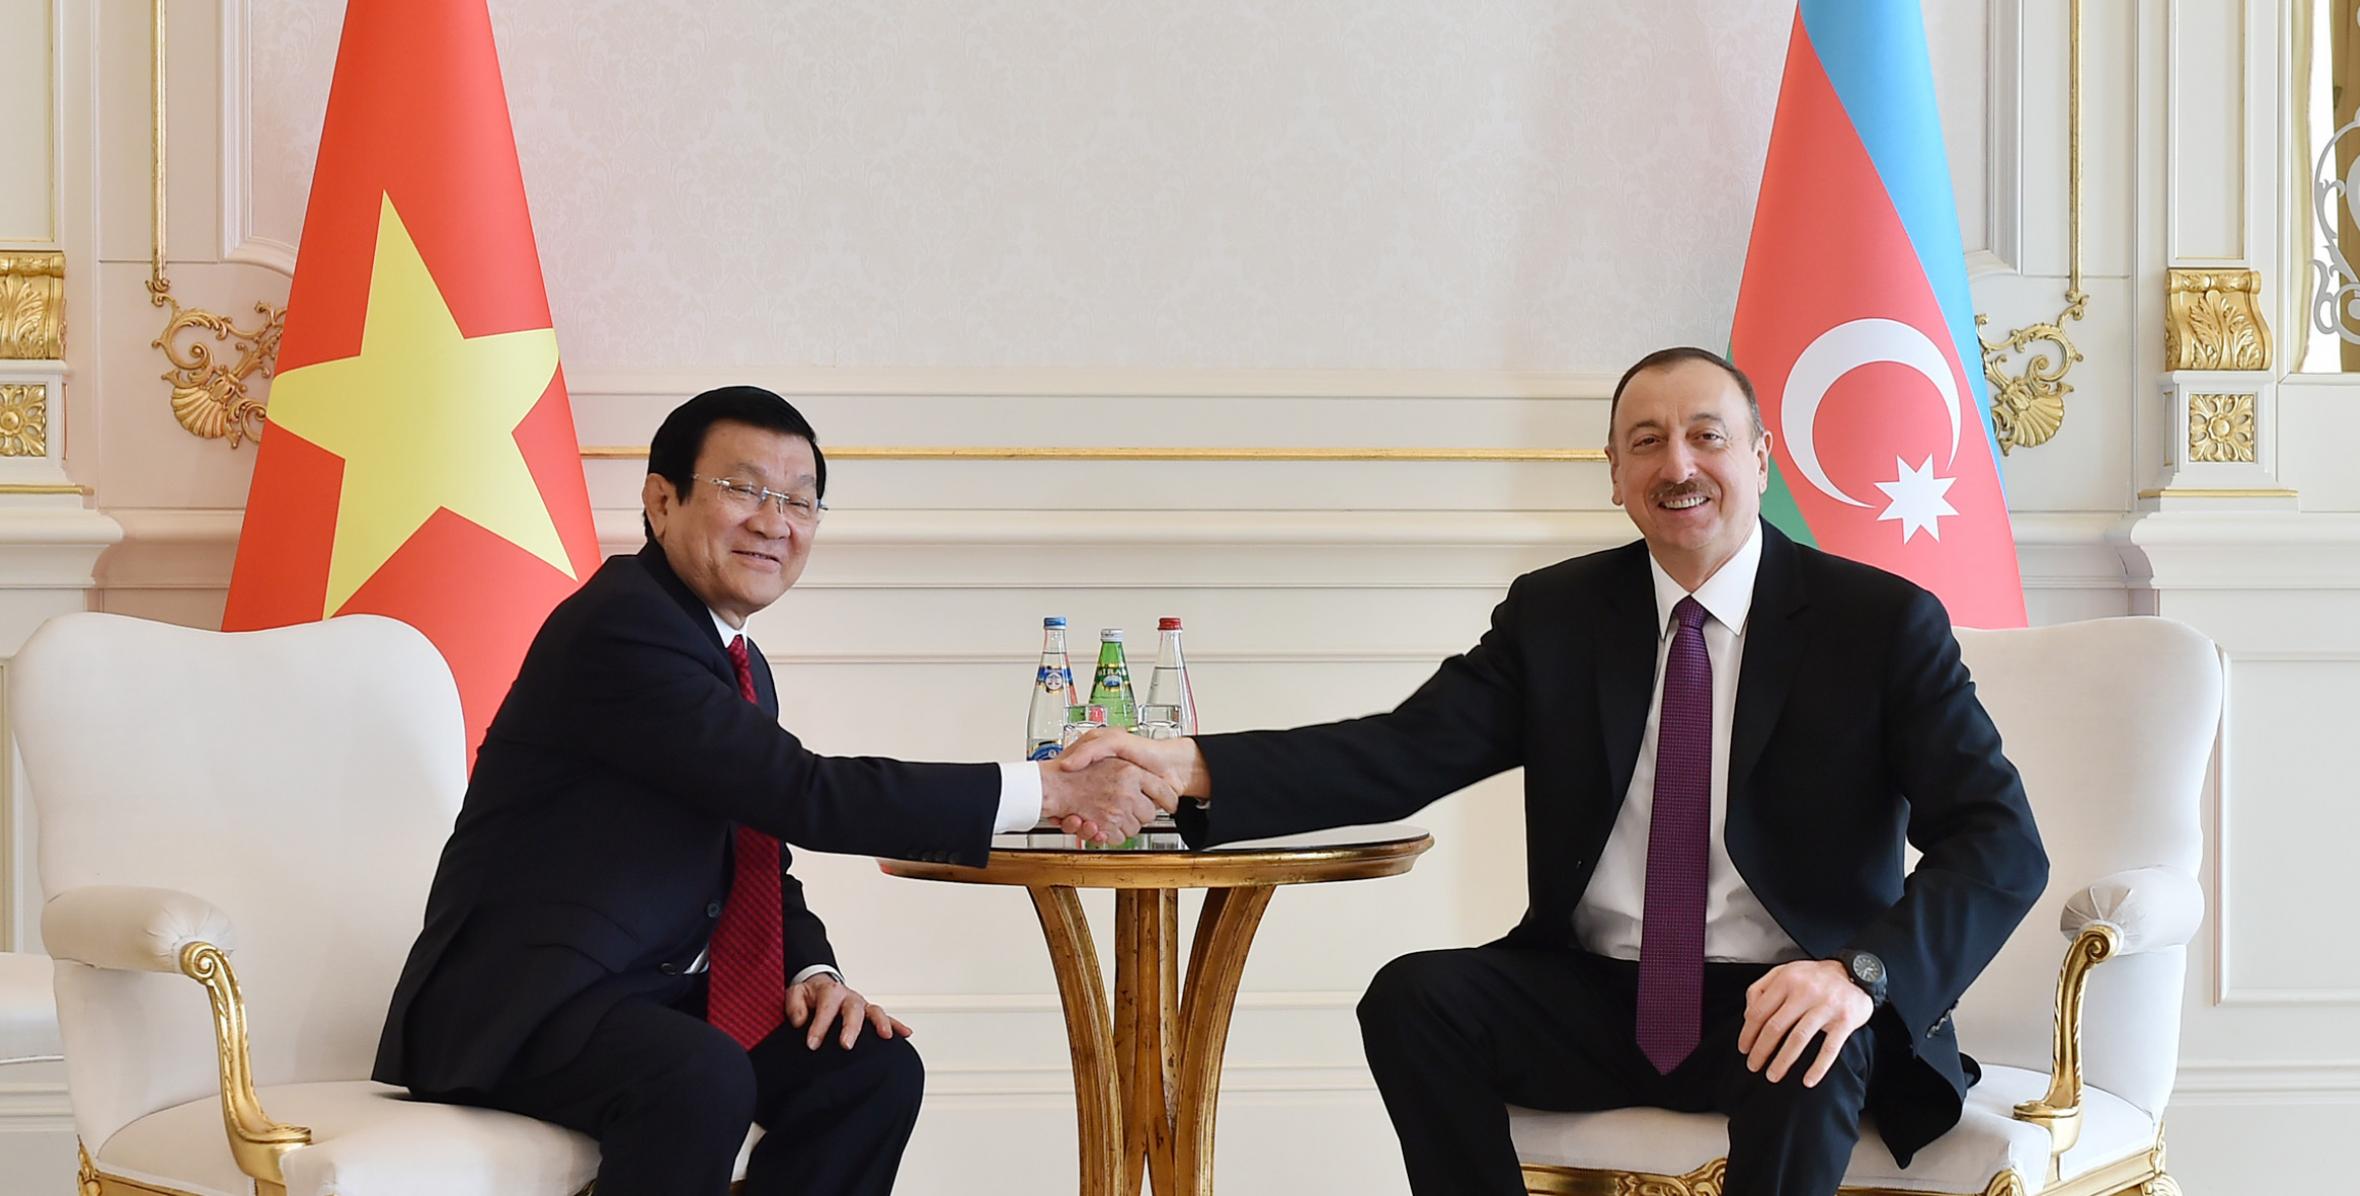 Состоялась встреча Ильхама Алиева и Президента Вьетнама Чыонга Тана Шанга в ограниченном составе